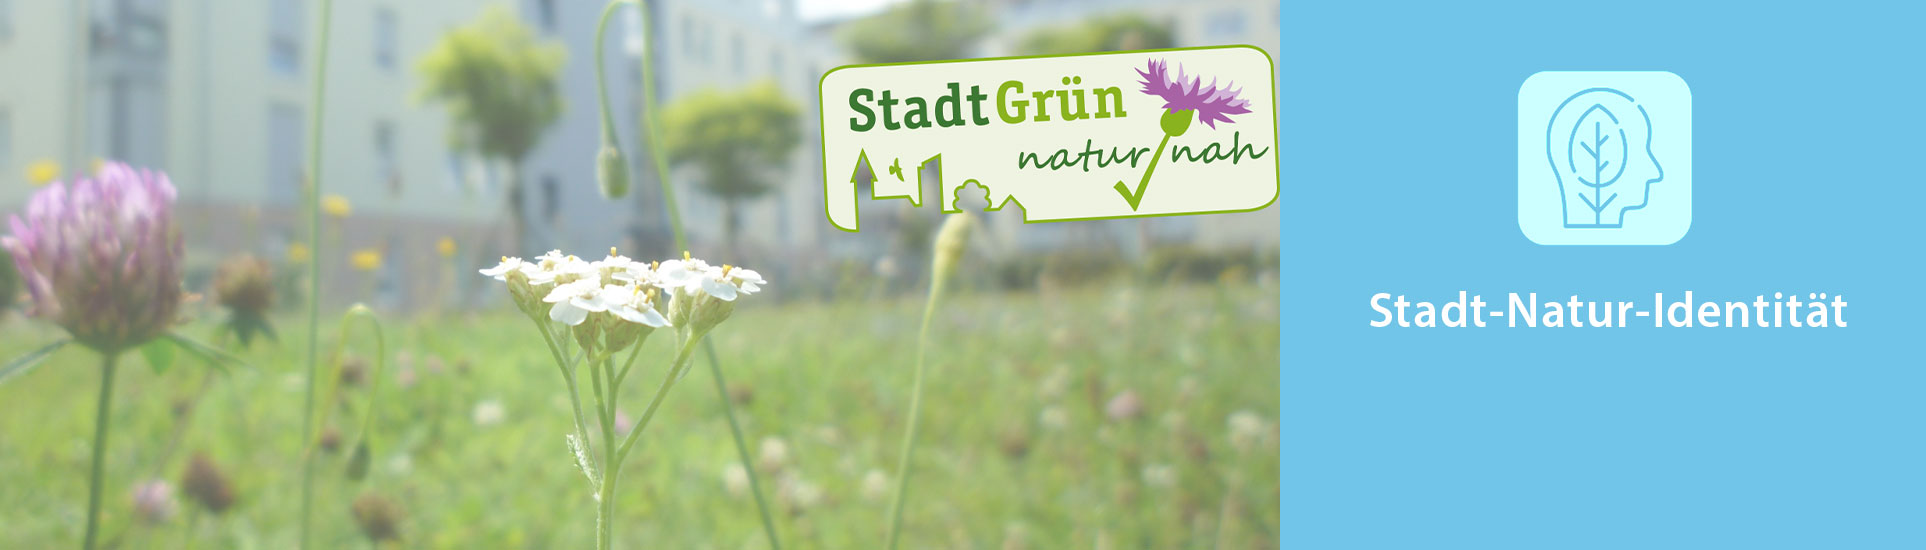 Blumenwiese vor Häusern mit Label „StadtGrün naturnah“